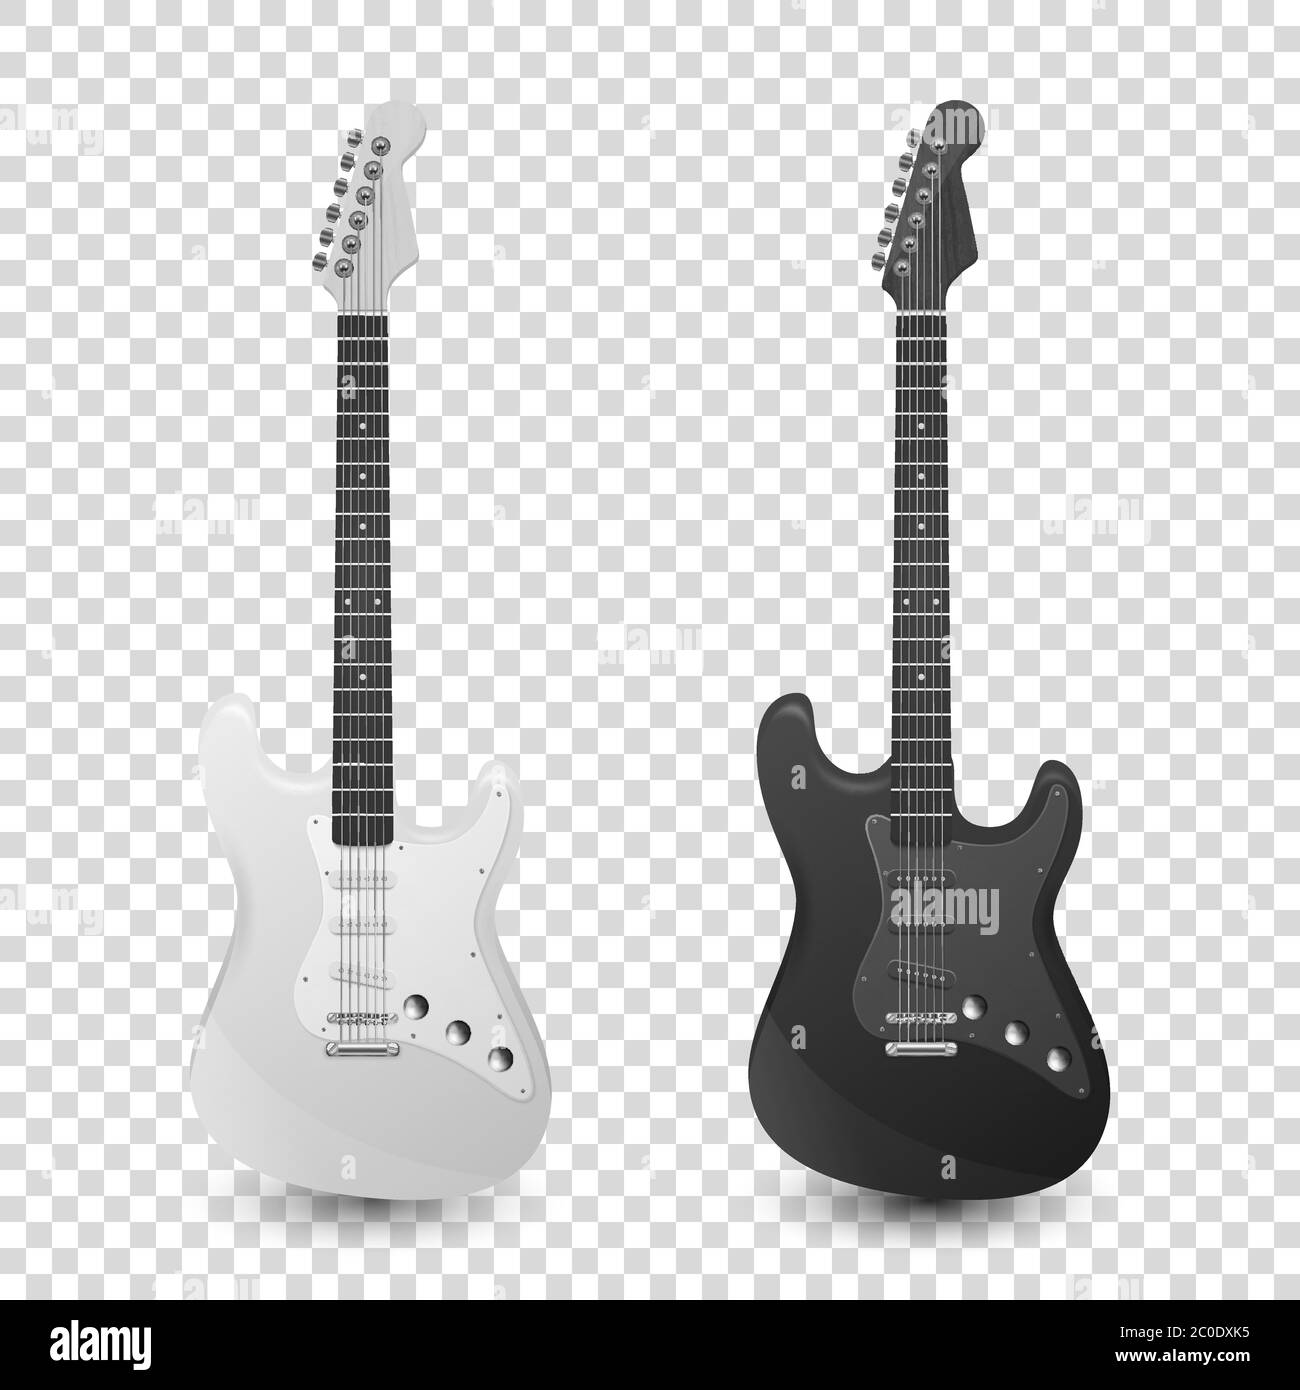 Vector 3d realistico Bianco e nero Classico Vecchio retro Electro Guitar Set icone di legno Closeup isolato su sfondo trasparente. Design Templte Illustrazione Vettoriale